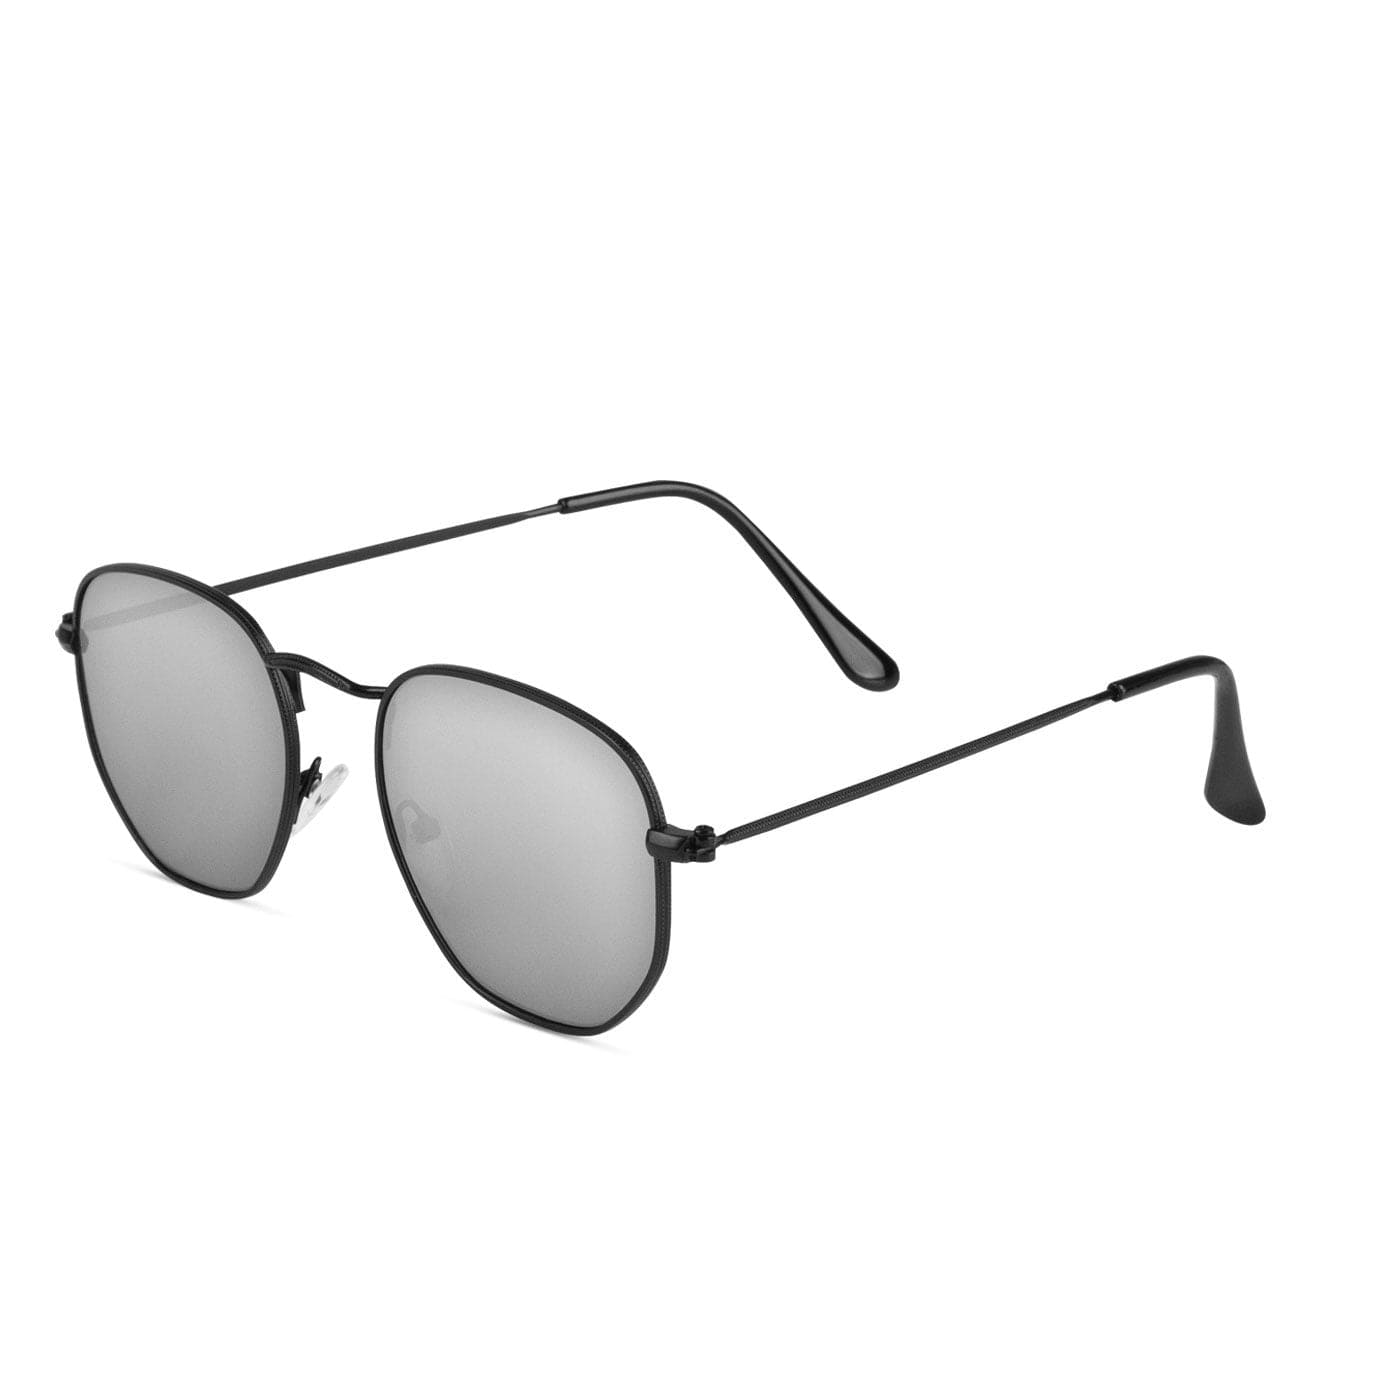 Samui Black / Silver Sunglasses